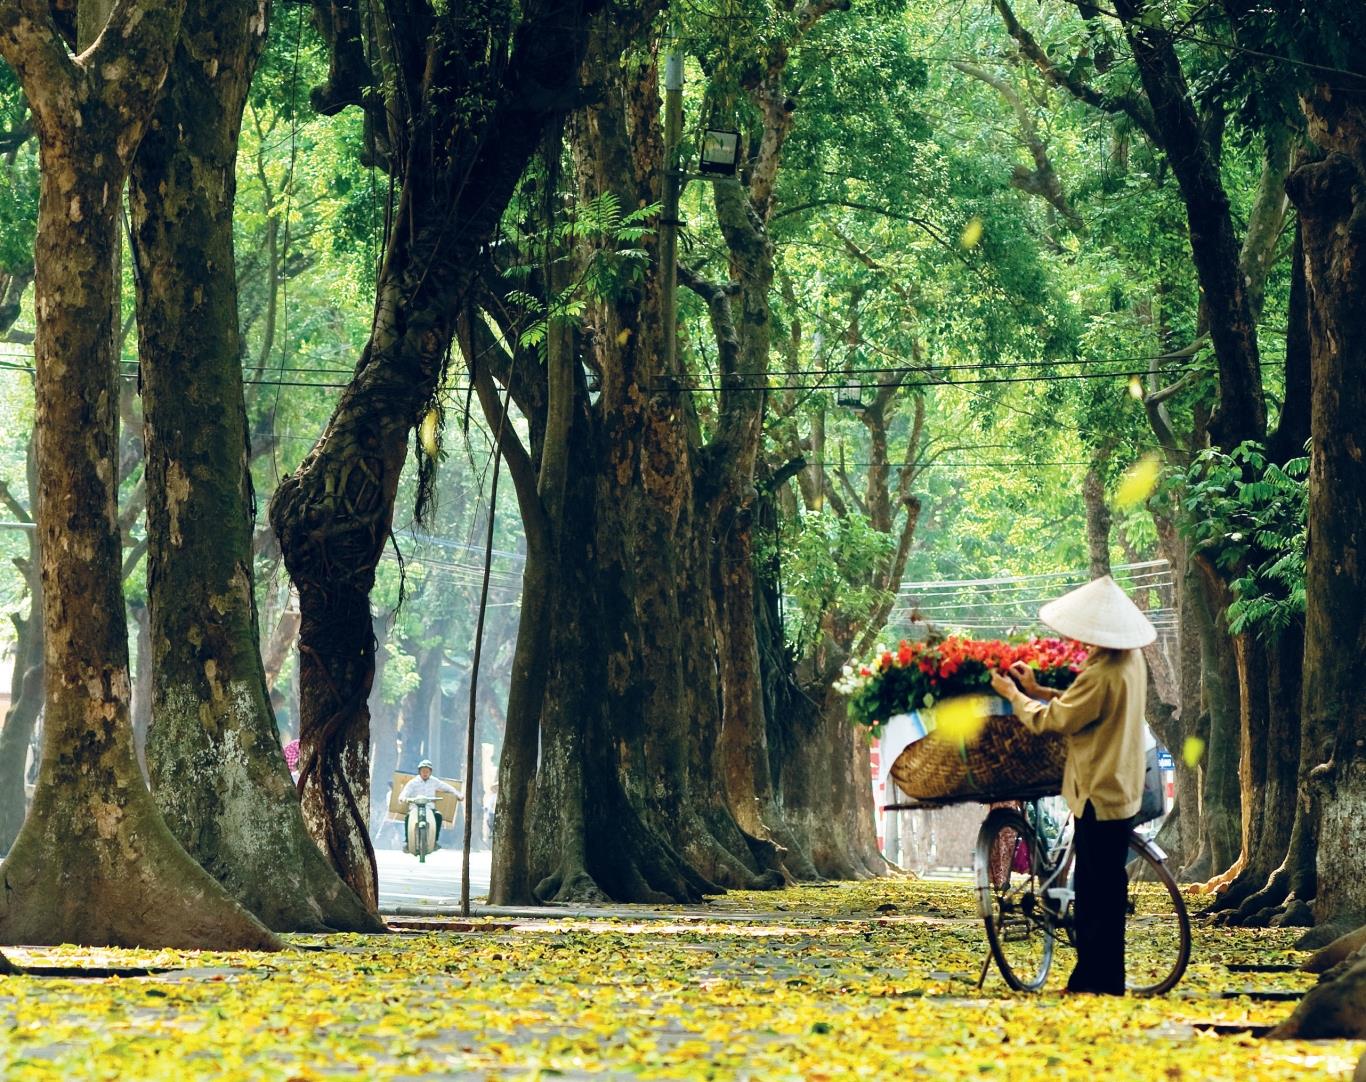 Con đường Phan Đình Phùng của Hà Nội rợp bóng cây xanh 2 bên và đầy lá vàng rơi vào mùa thu